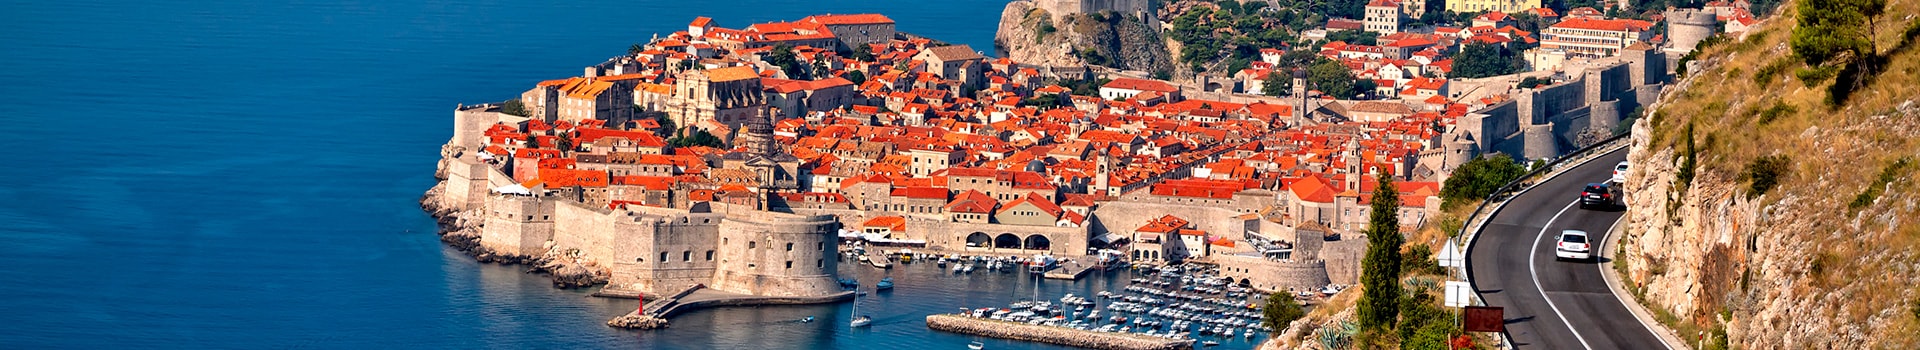 Nice - Dubrovnik